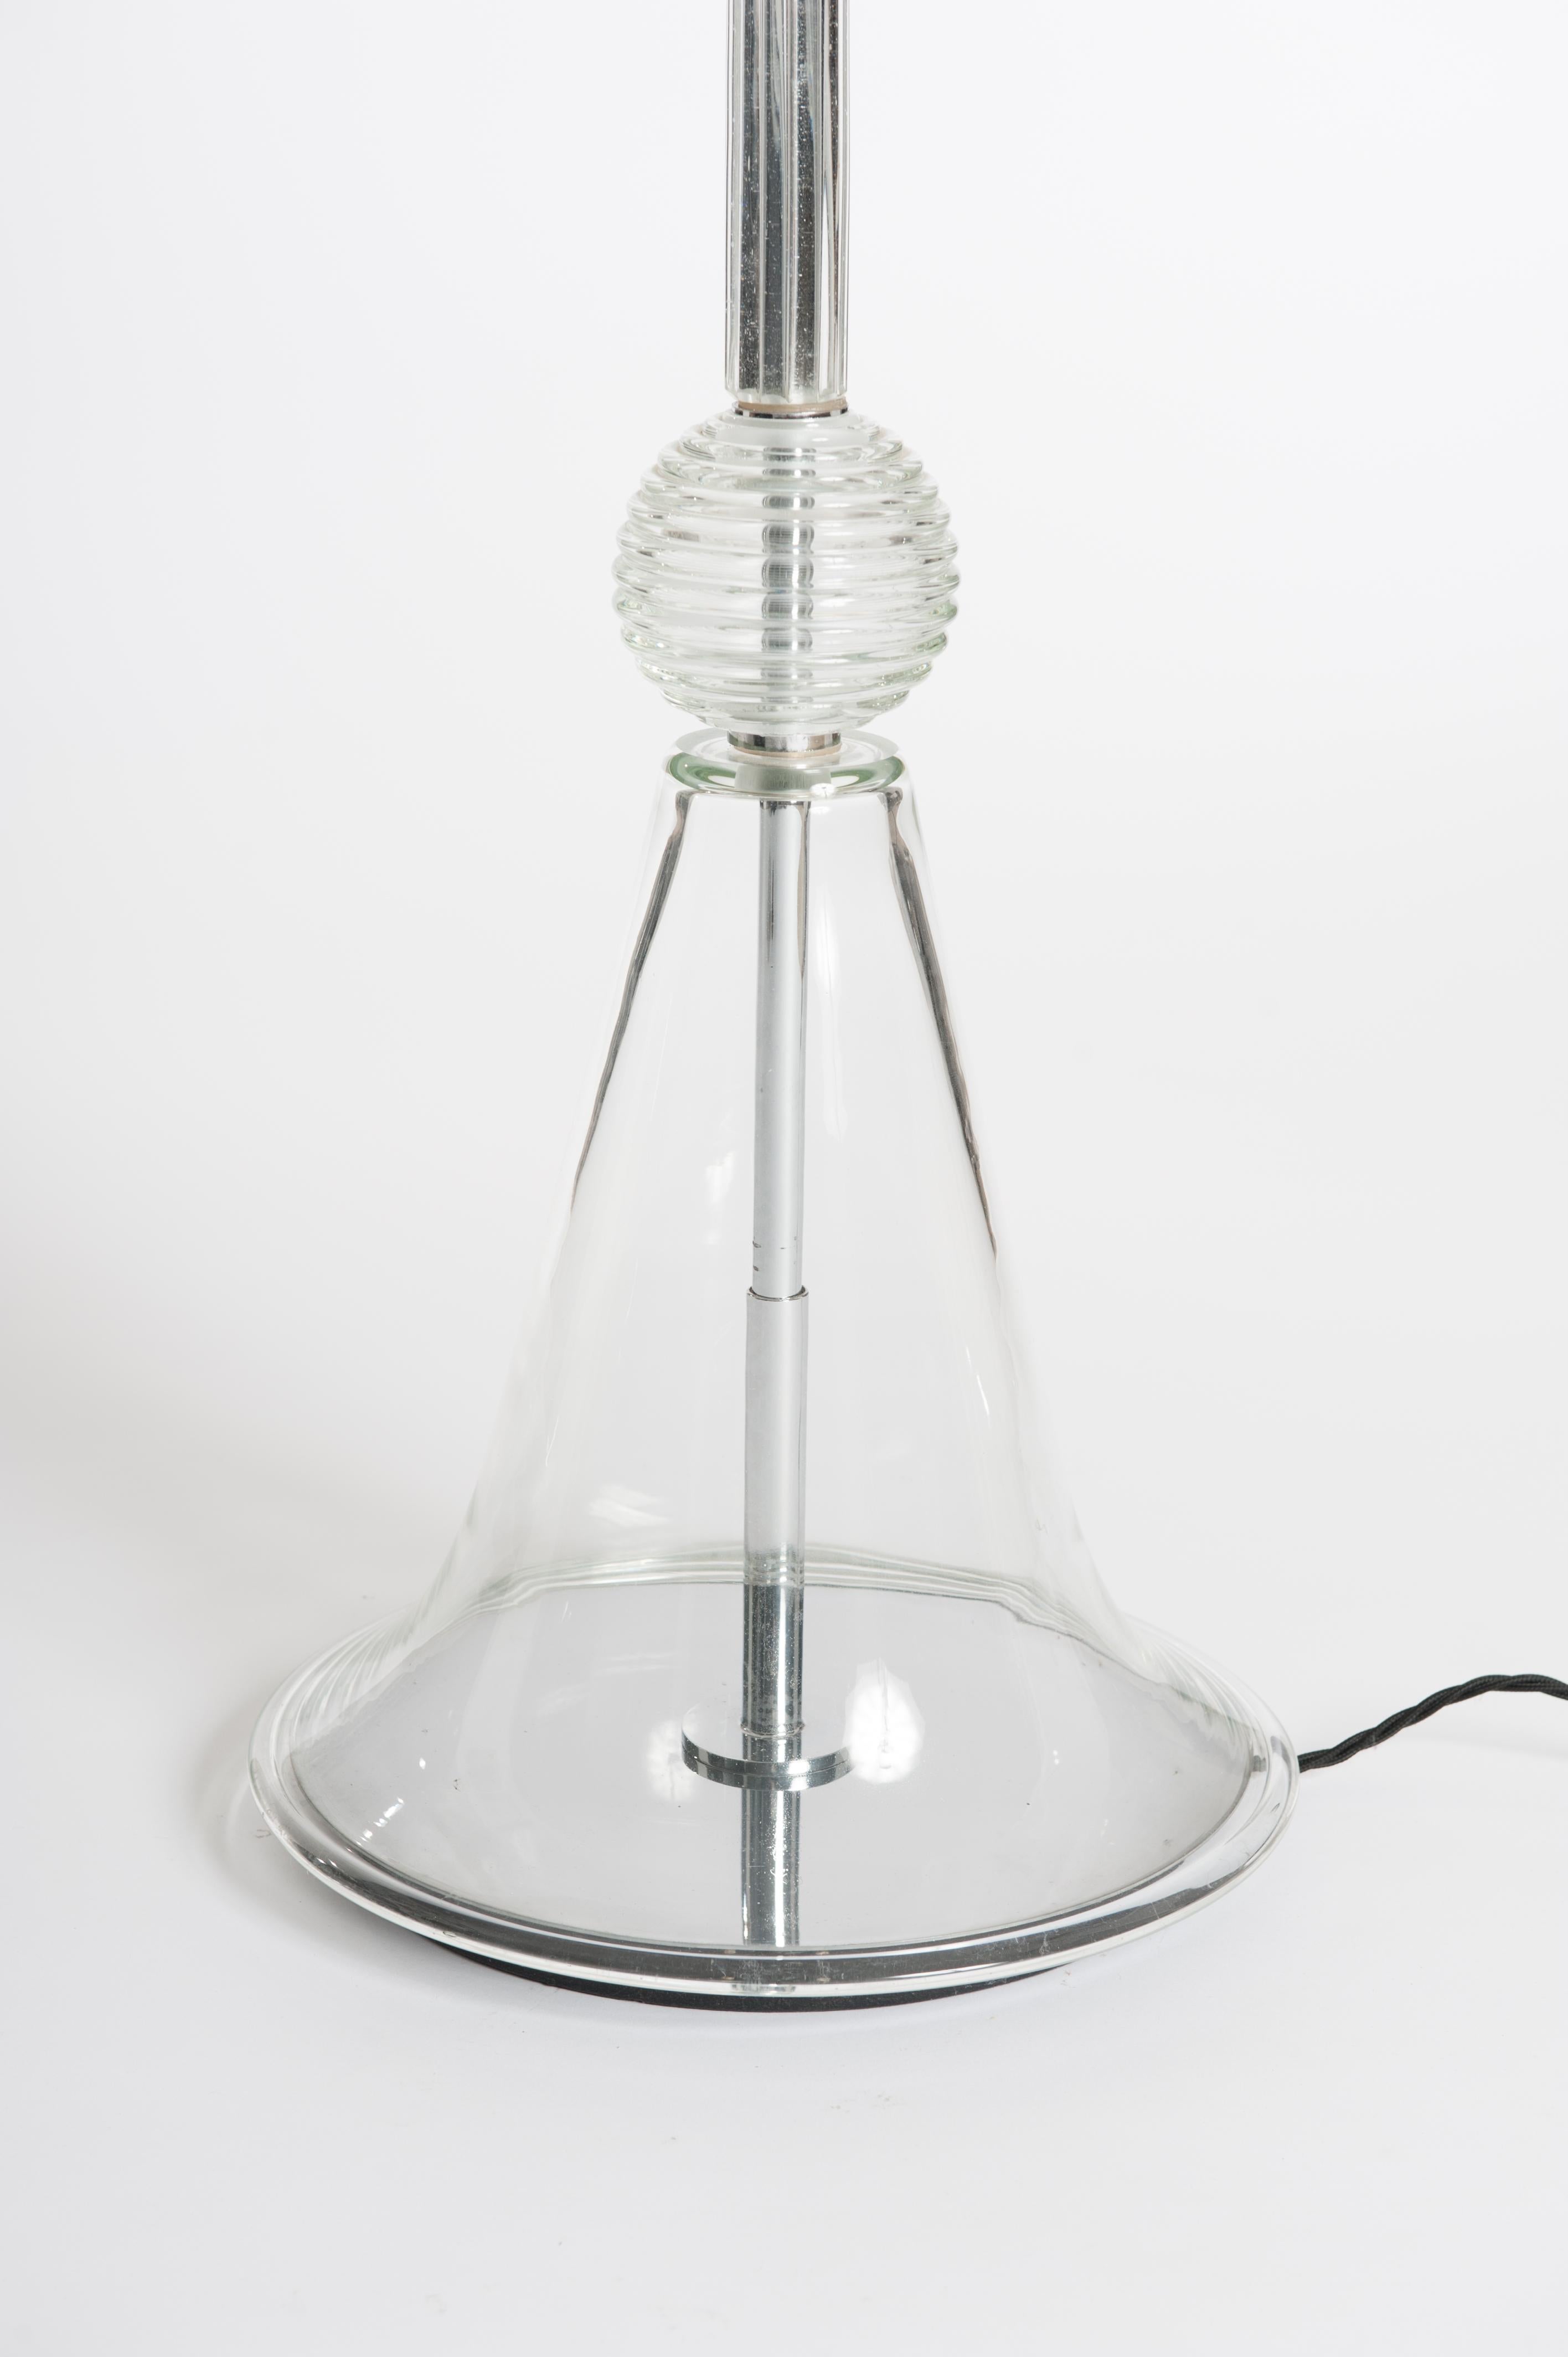 Wunderschöne grazile Stehlampe aus klarem Muranoglas.
Der Glasschirm und die Distanzschalen haben eine gerippte Konstruktion.
Das Basisteil ist schlicht. 


